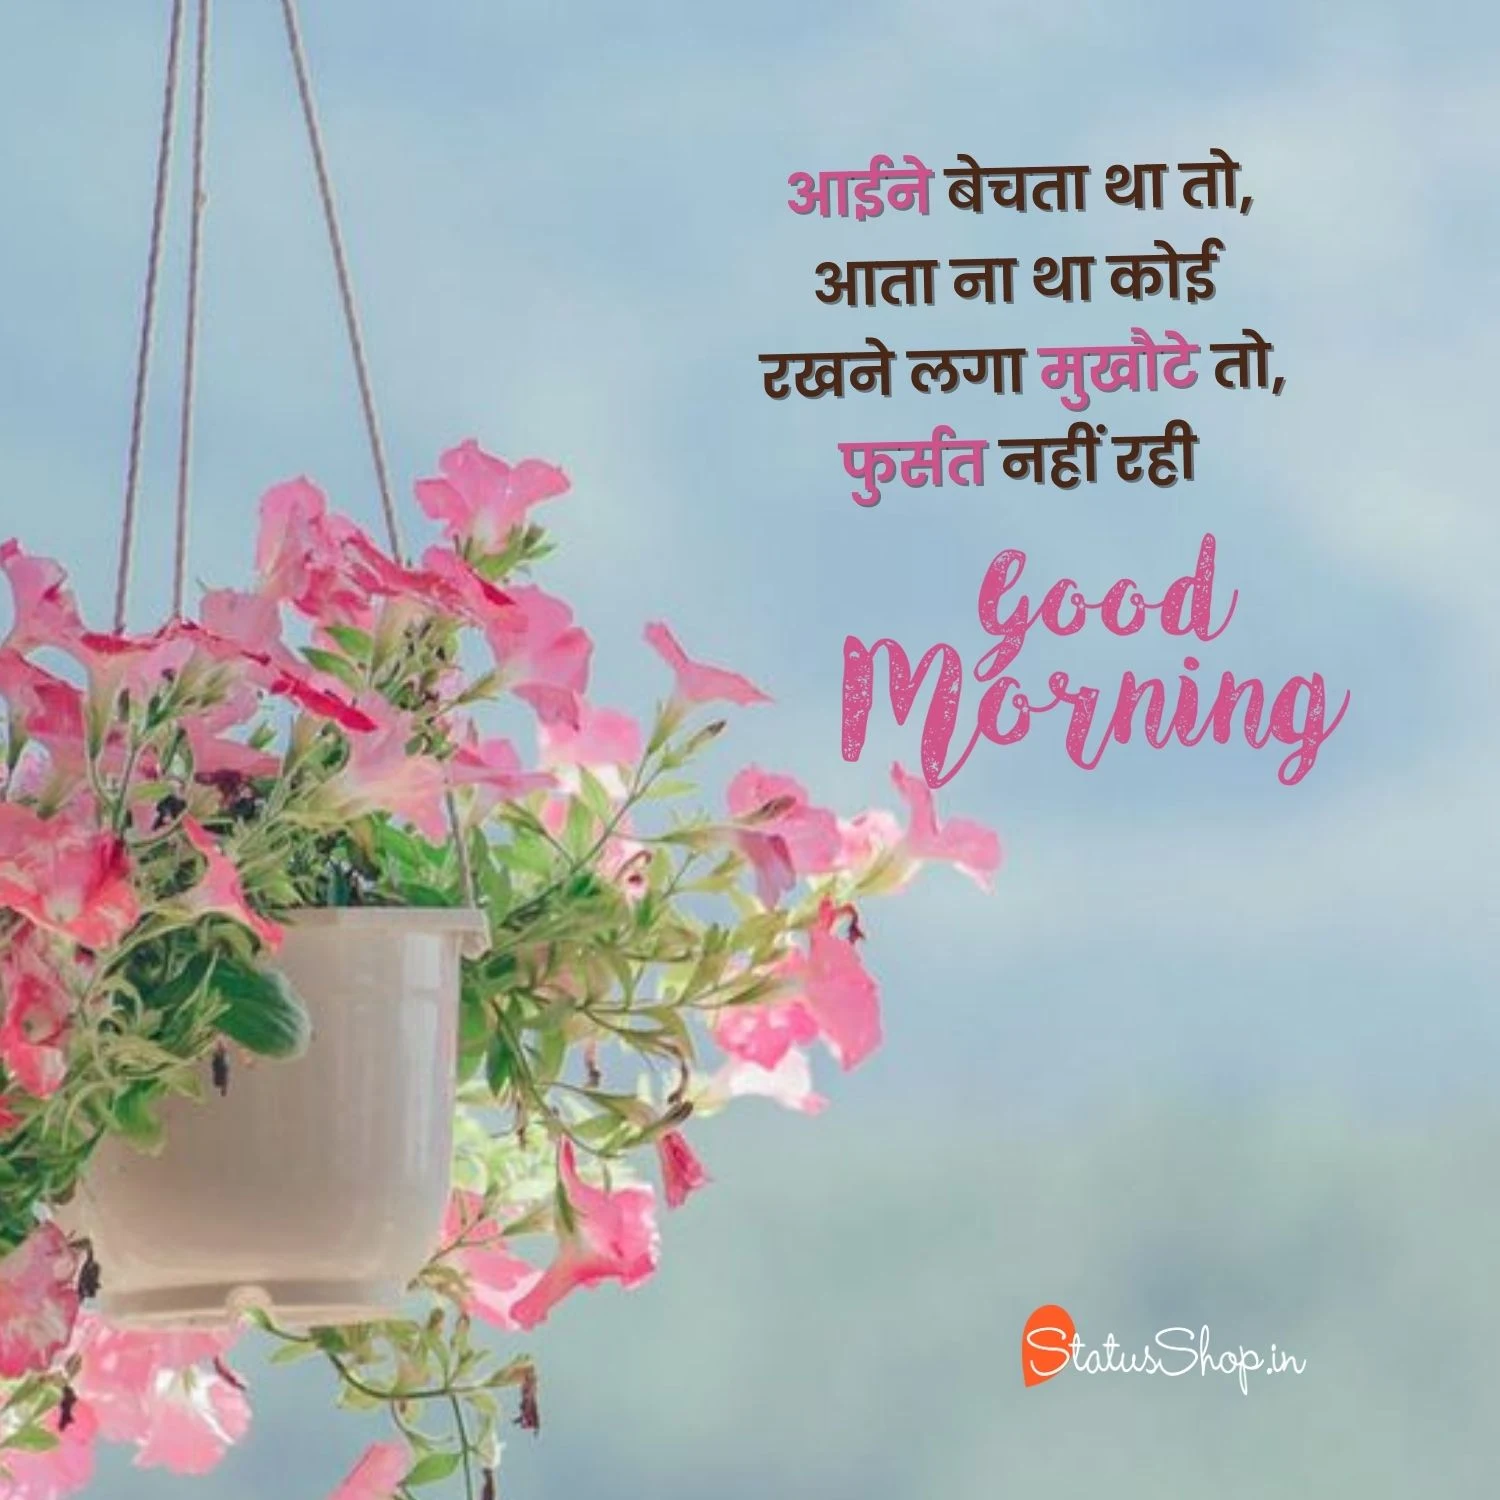 Love-Hindi-Good-Morning-Images